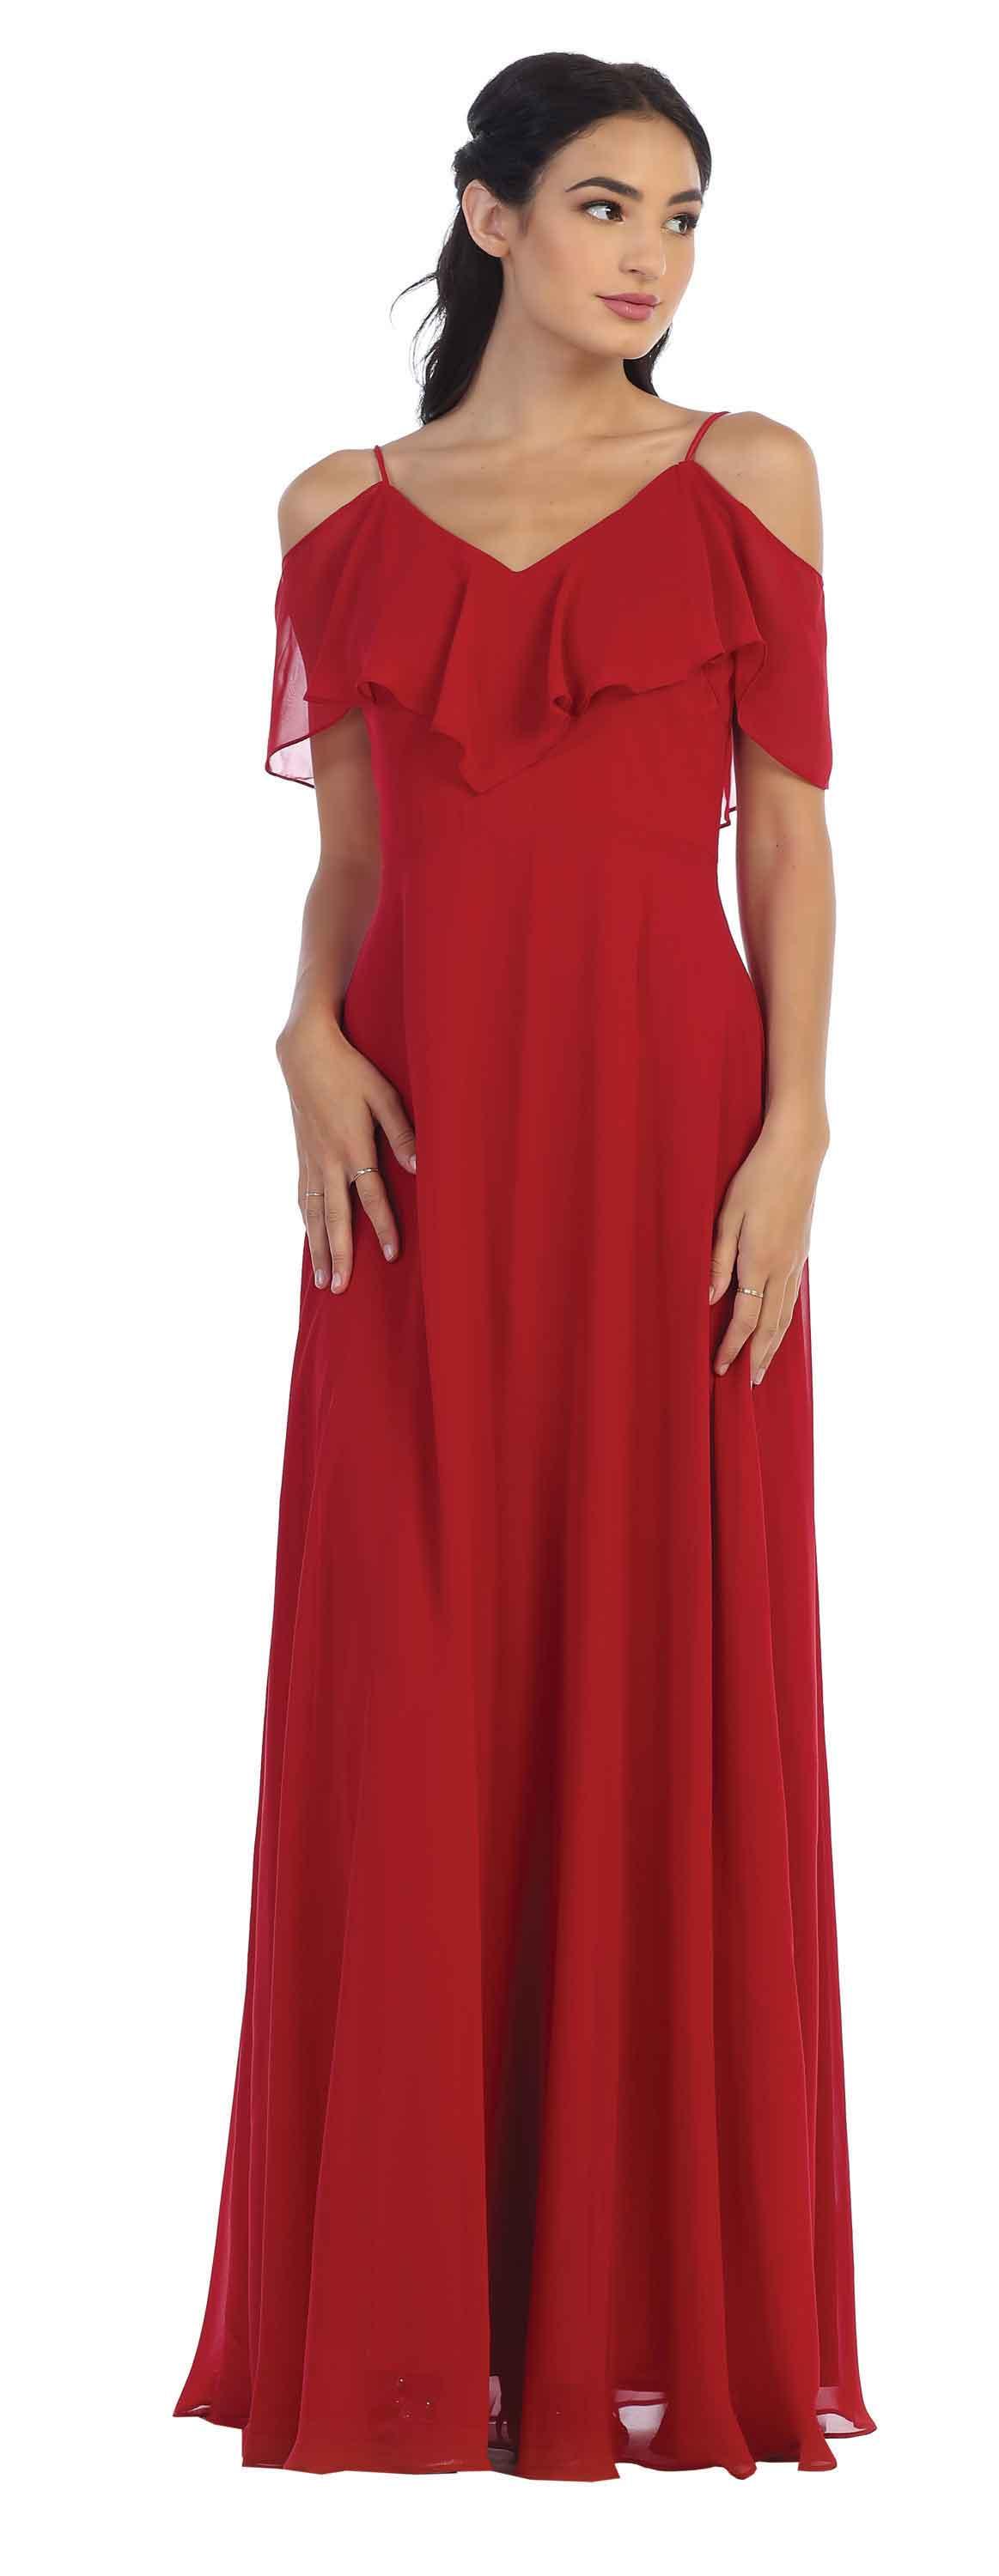 Long Formal Bridesmaids Off Shoulder Prom Dress - The Dress Outlet Eva Fashion